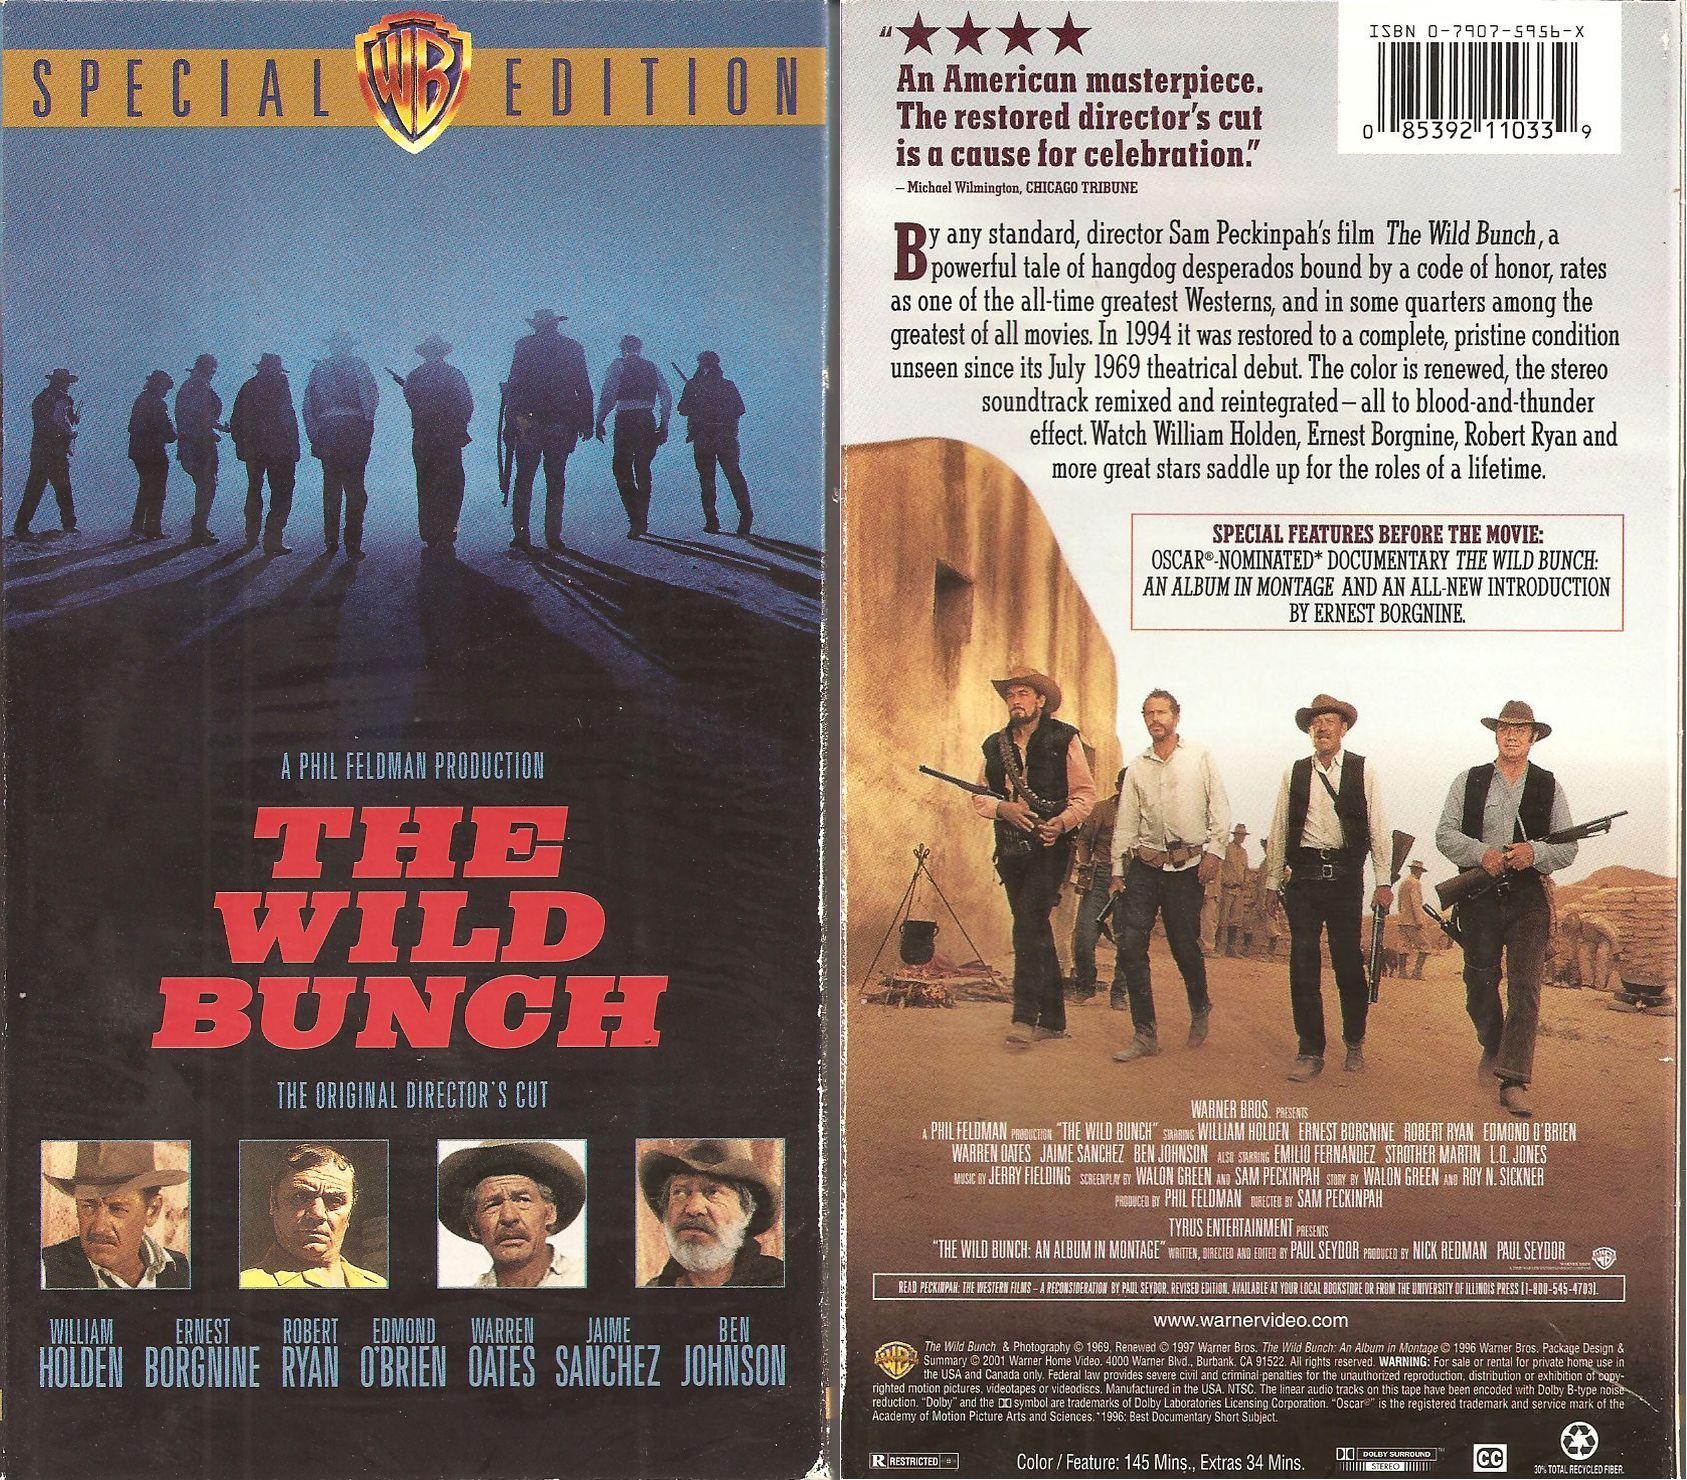 Wild Bunch [VHS] 85392110339 | eBay